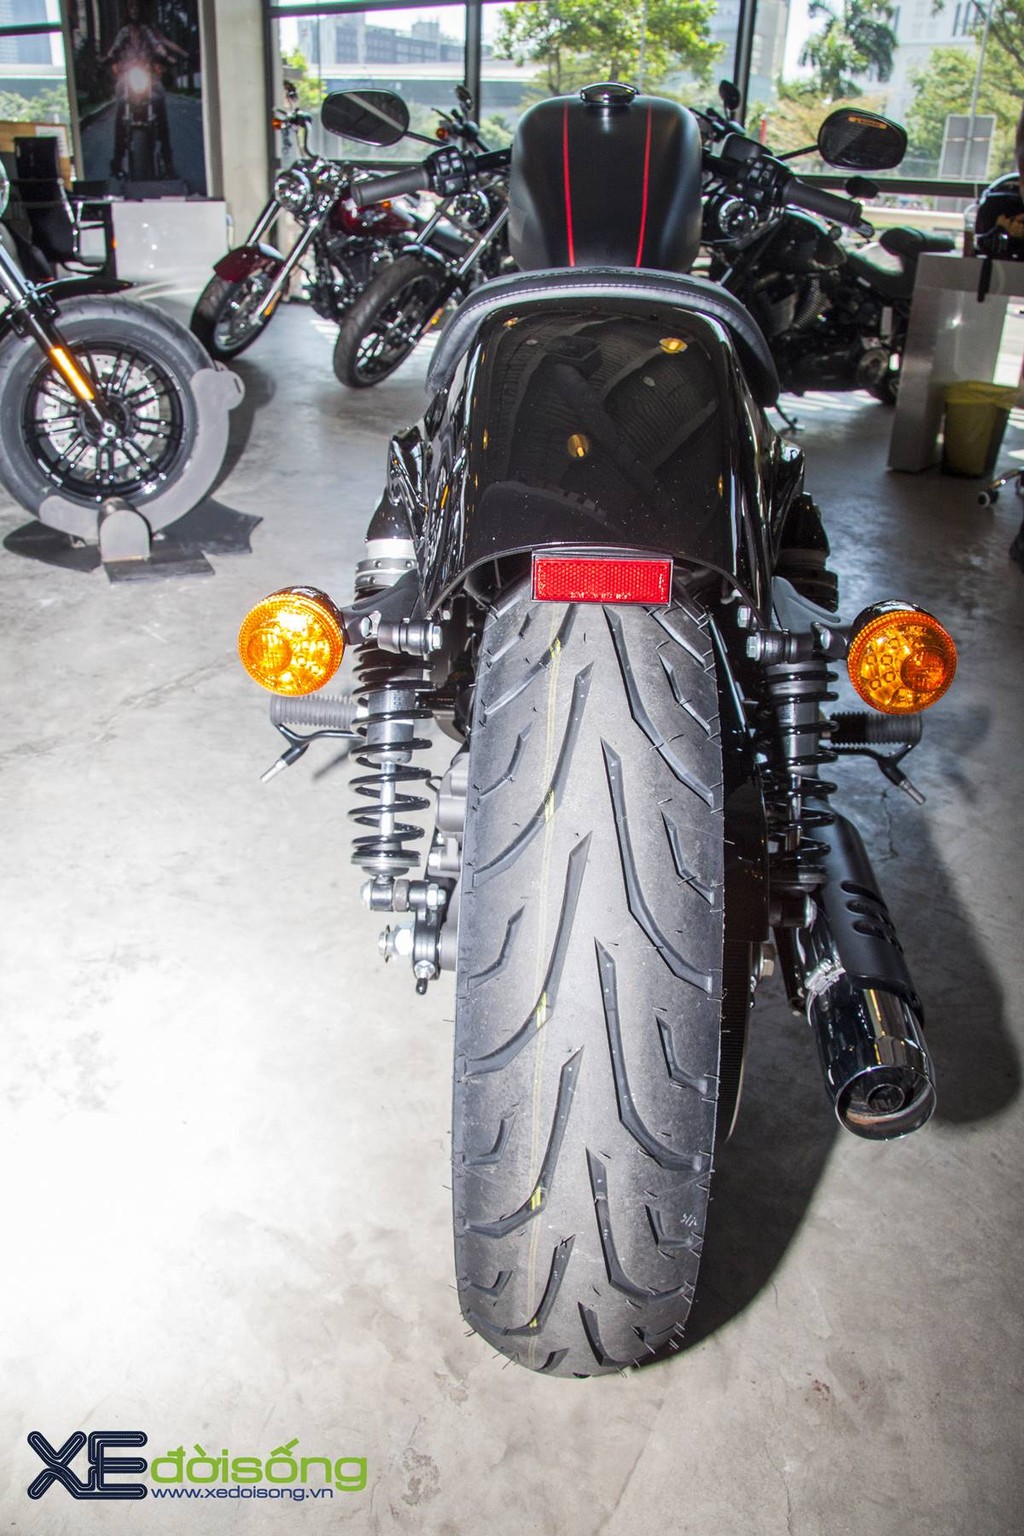 Ngắm Harley Davidson Roadster 1200 độ xe đua chính hãng tại Việt Nam ảnh 5